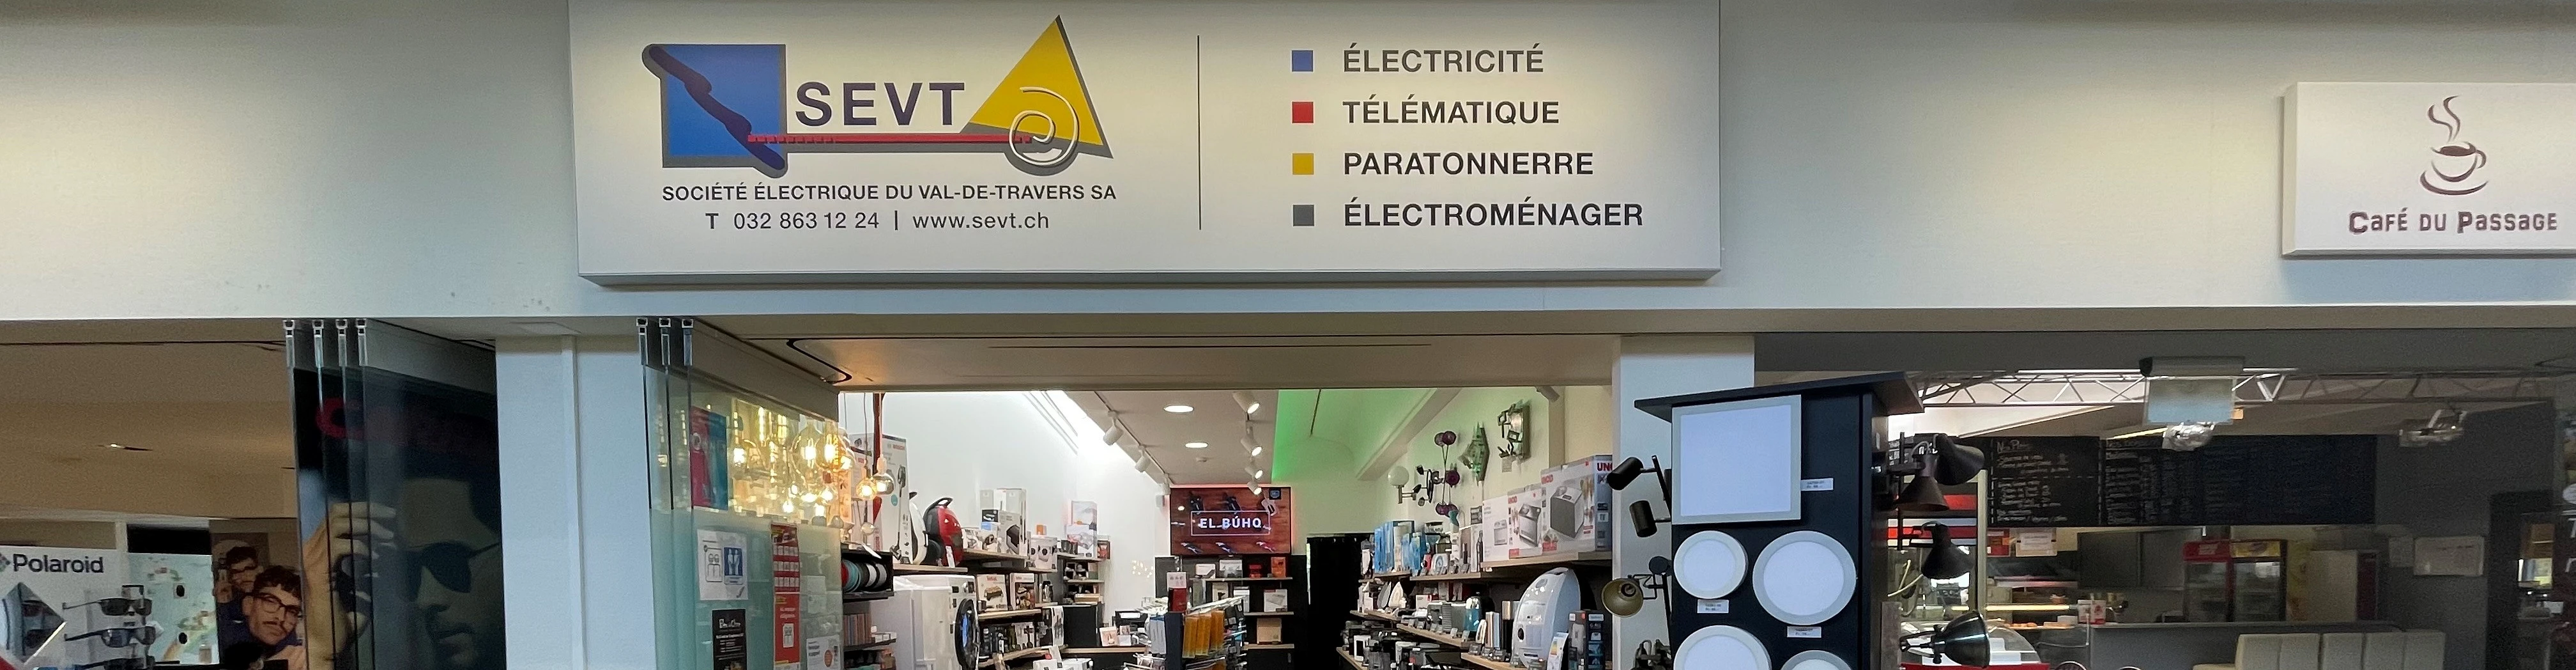 Société Electrique du Val-de-Travers SA - SEVT Magasin Prés-de-la-Porte